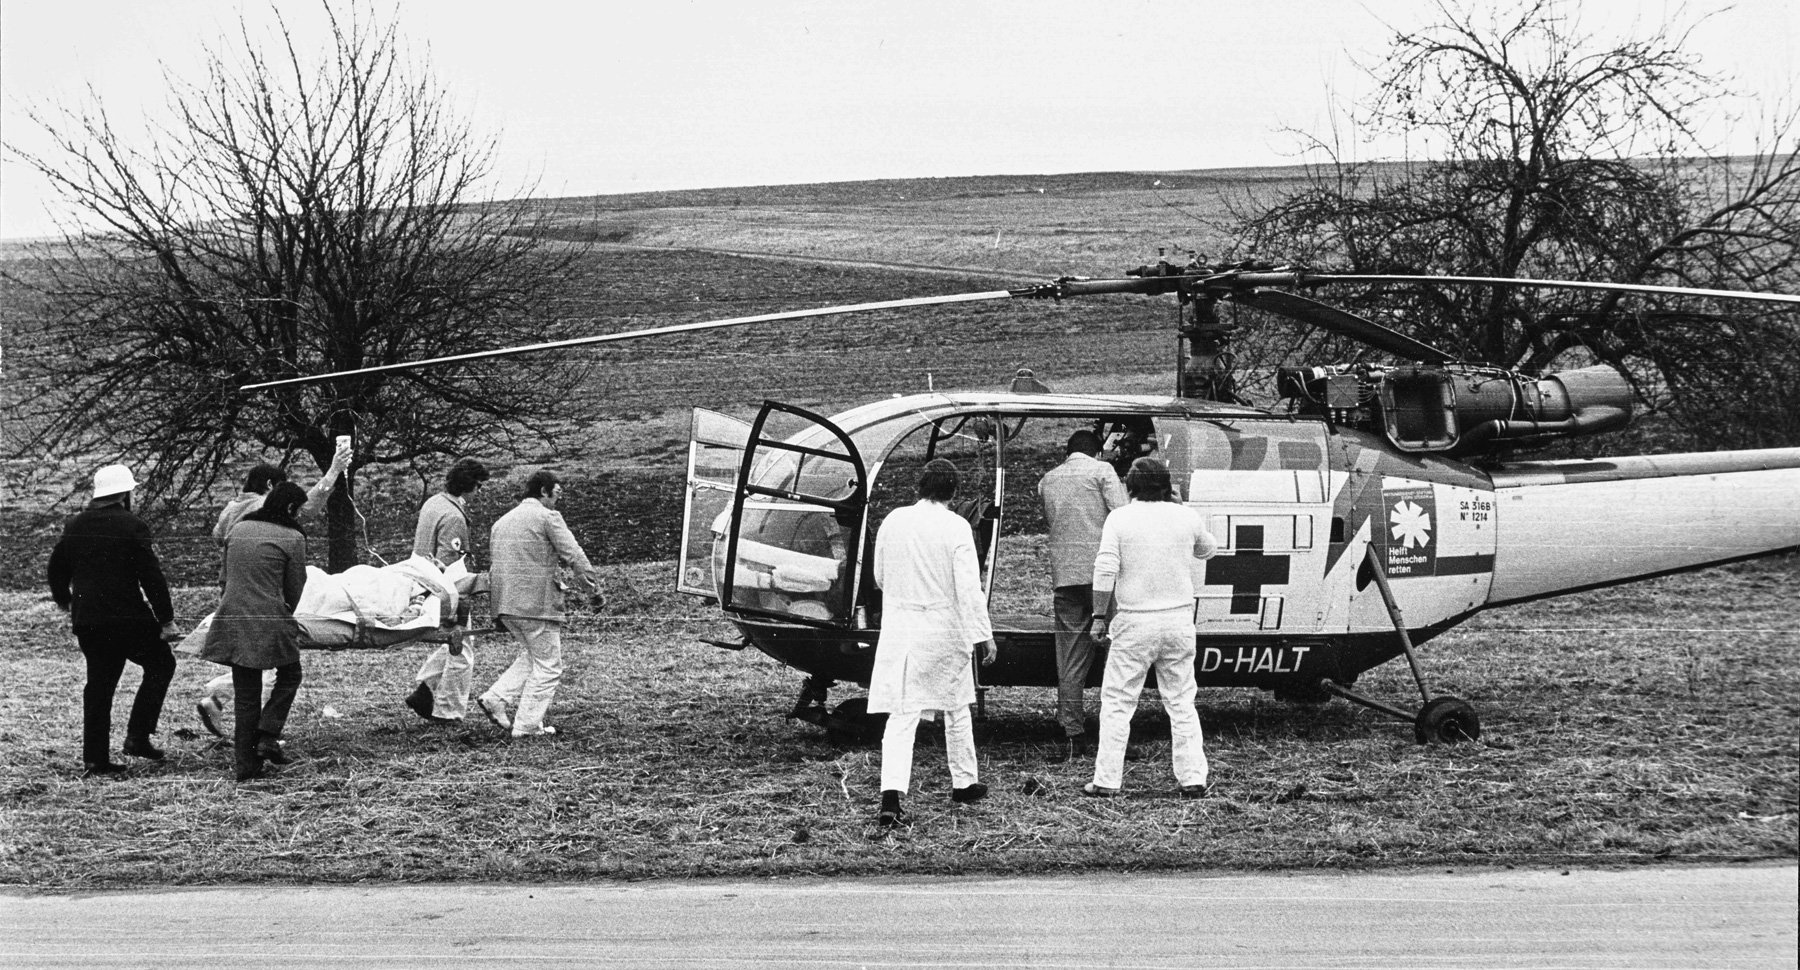 Schon 1974 galt: Luftrettung ist Teamarbeit. Bis heute arbeiten die Besatzungen der DRF Luftrettung am Einsatzort Hand in Hand unter anderem mit den bodengebundenen Rettungsdiensten, der Polizei und den Feuerwehren. (Quelle: DRF Luftrettung)